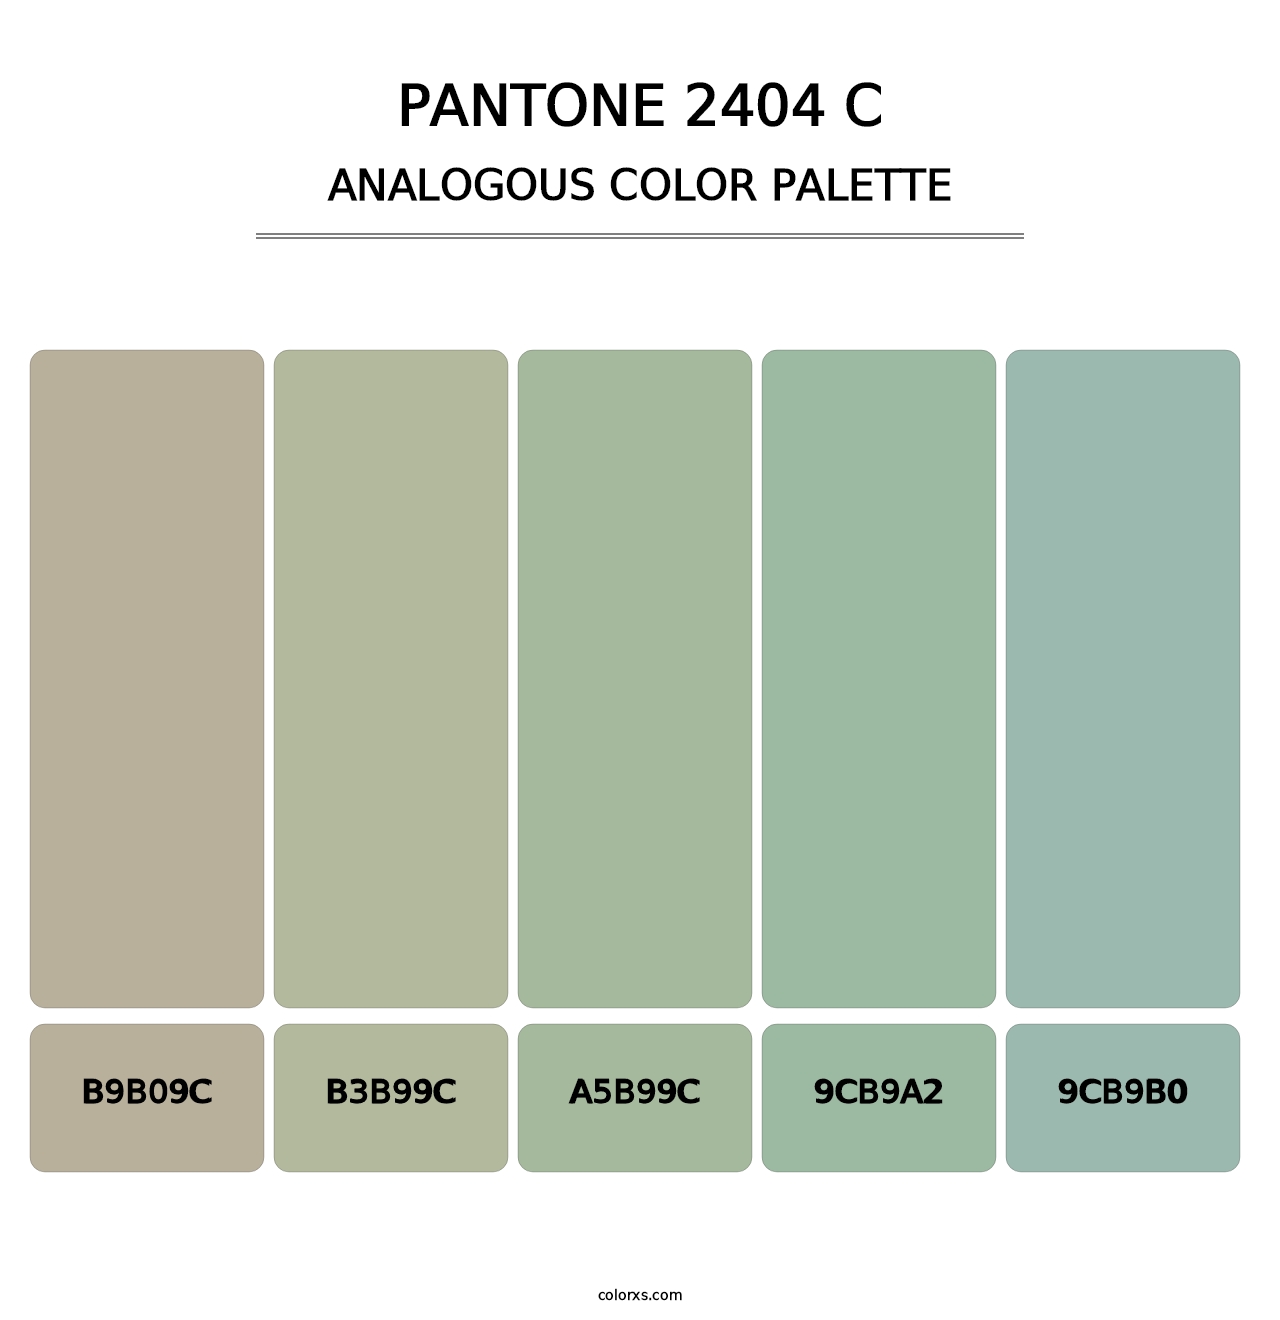 PANTONE 2404 C - Analogous Color Palette